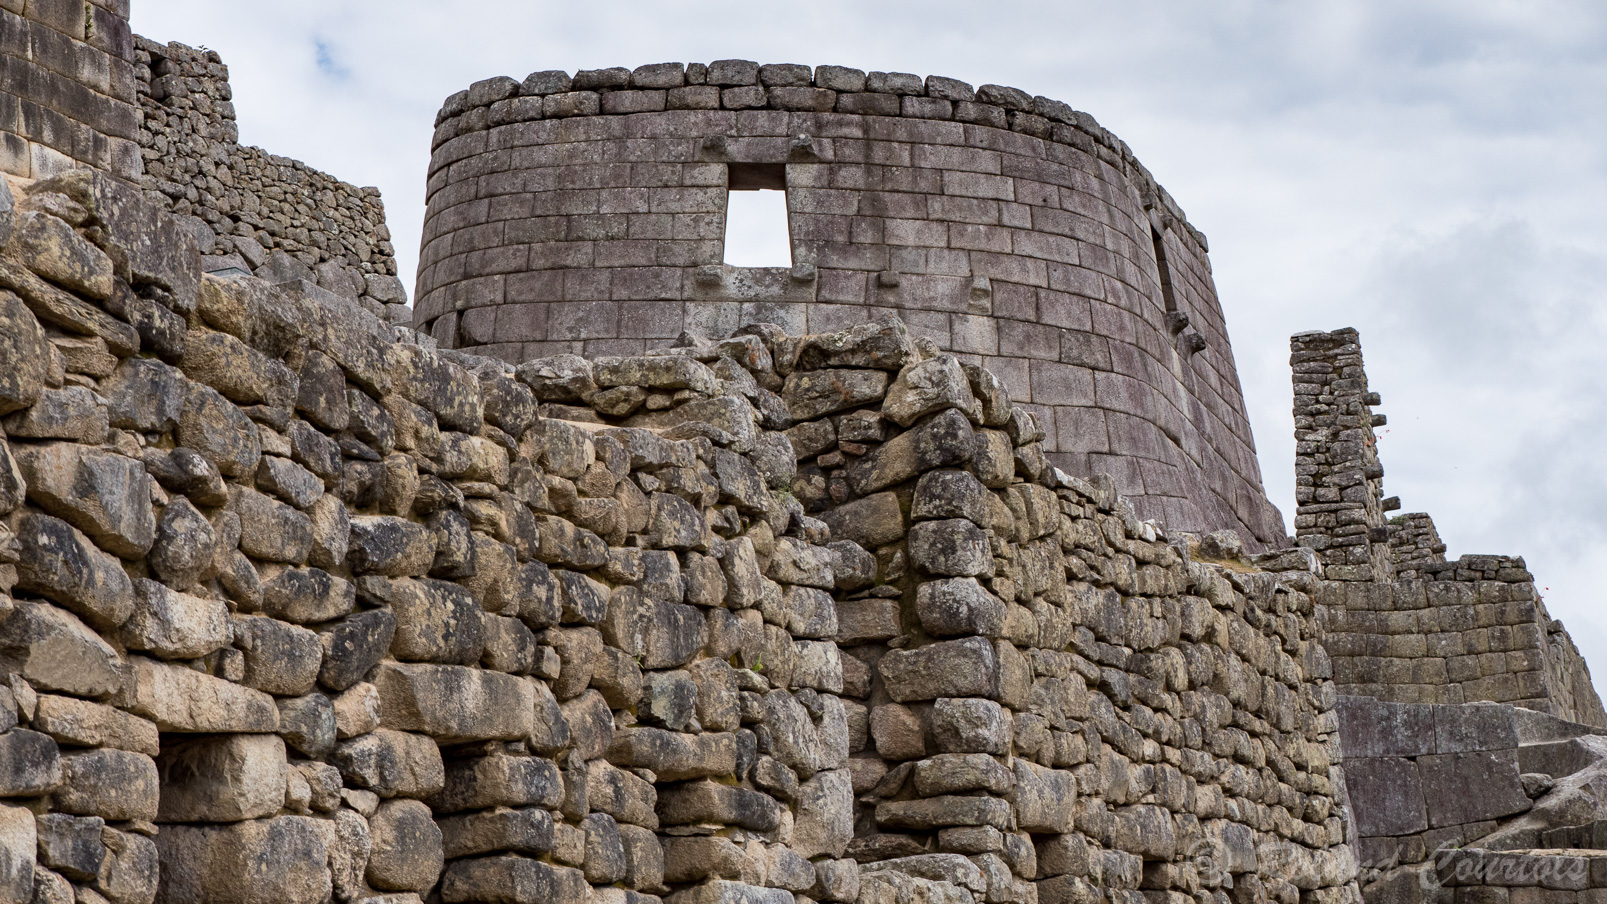 Machu Pichu, Le Temple du Soleil de structure semi-circulaire était un observatoire astronomique, servant à établir le calendrier